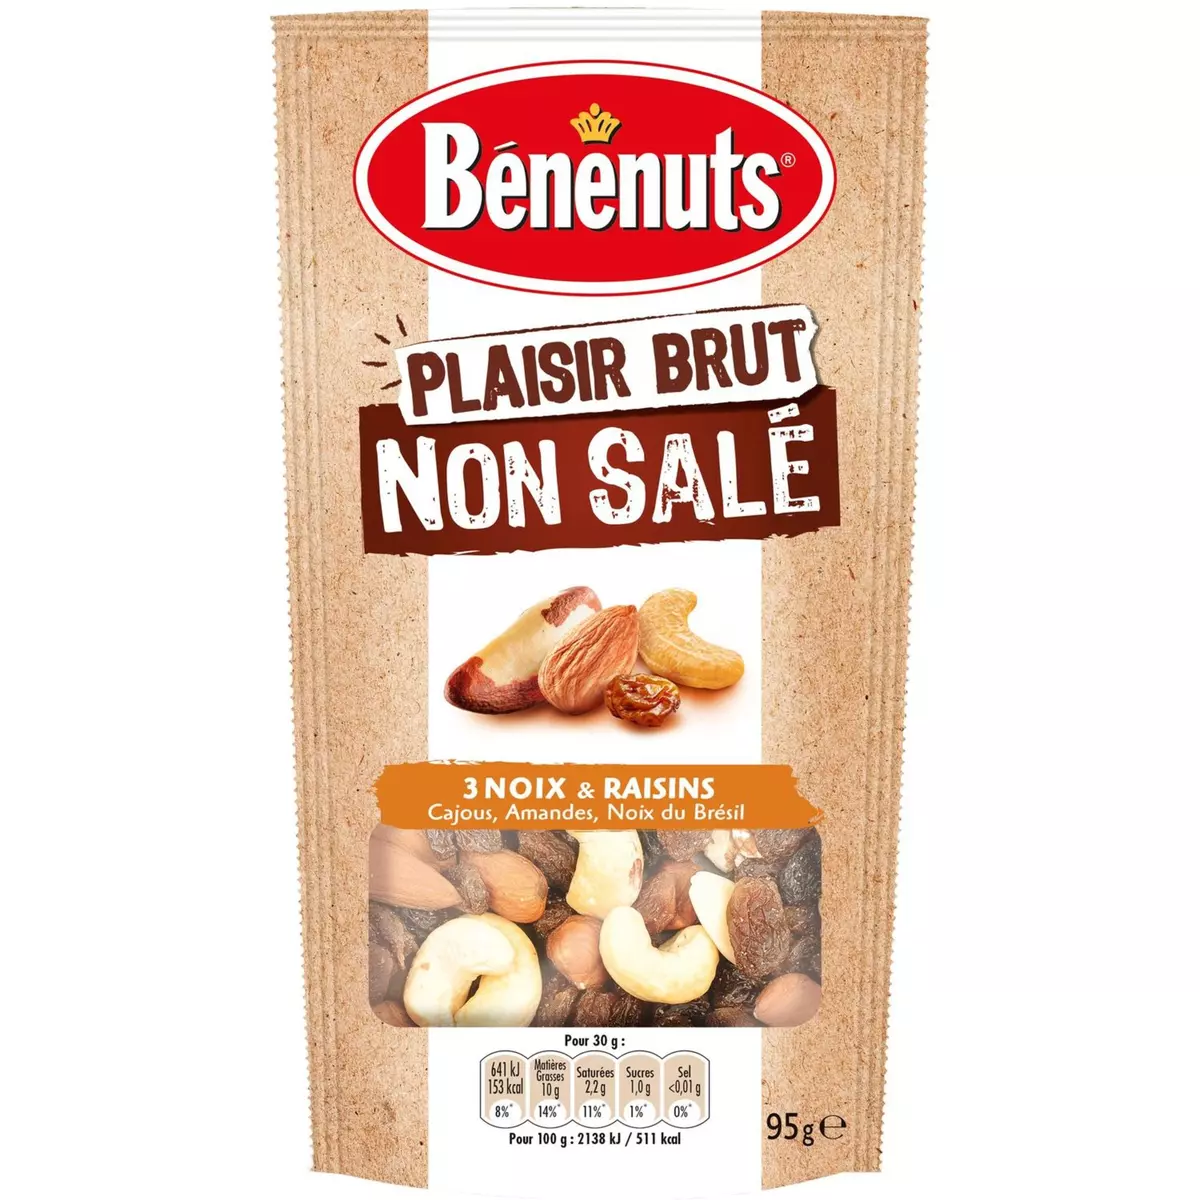 BENENUTS Bénénuts Plaisir brut non salé 3 noix et raisins 95g 95g